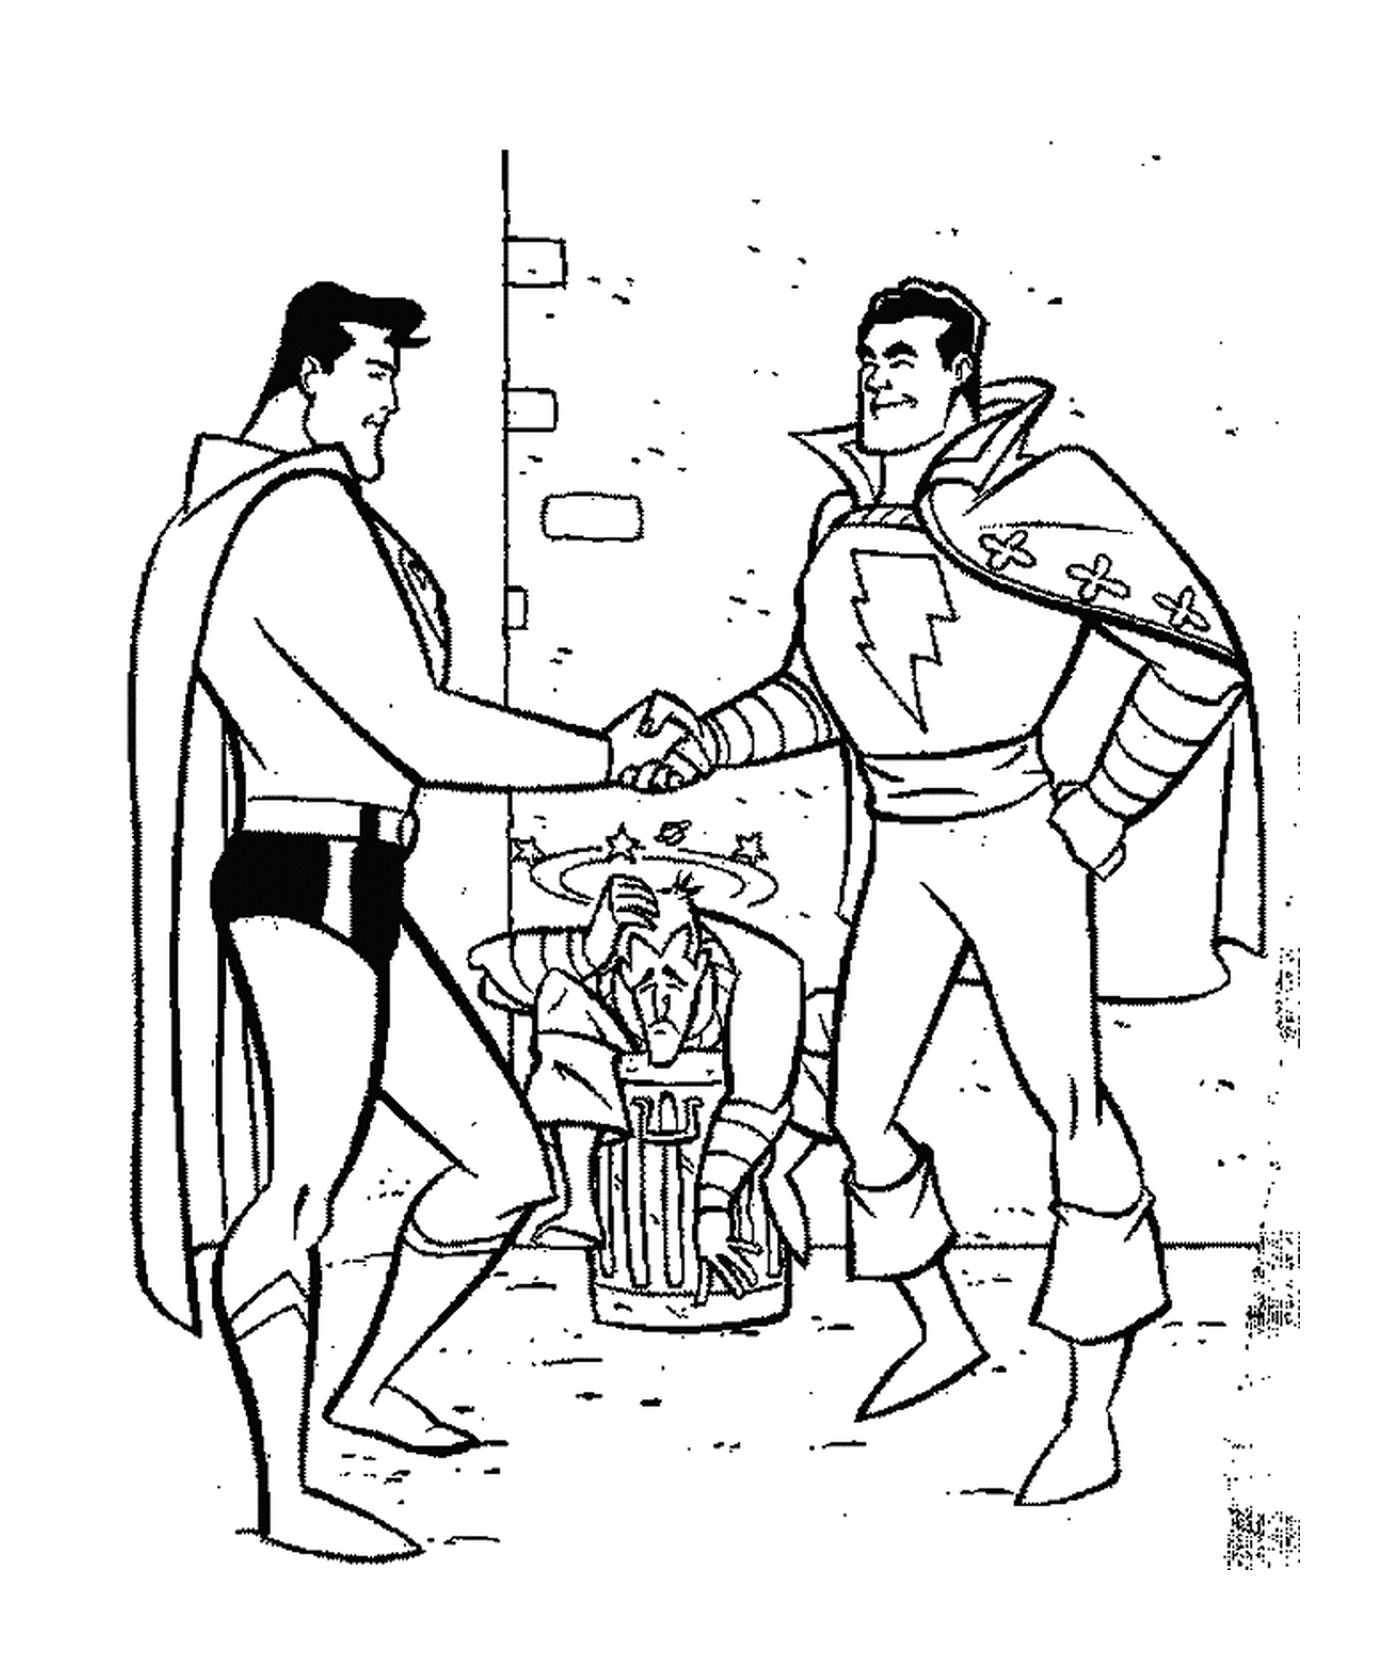  Супермен пожимает Флэшу руку 